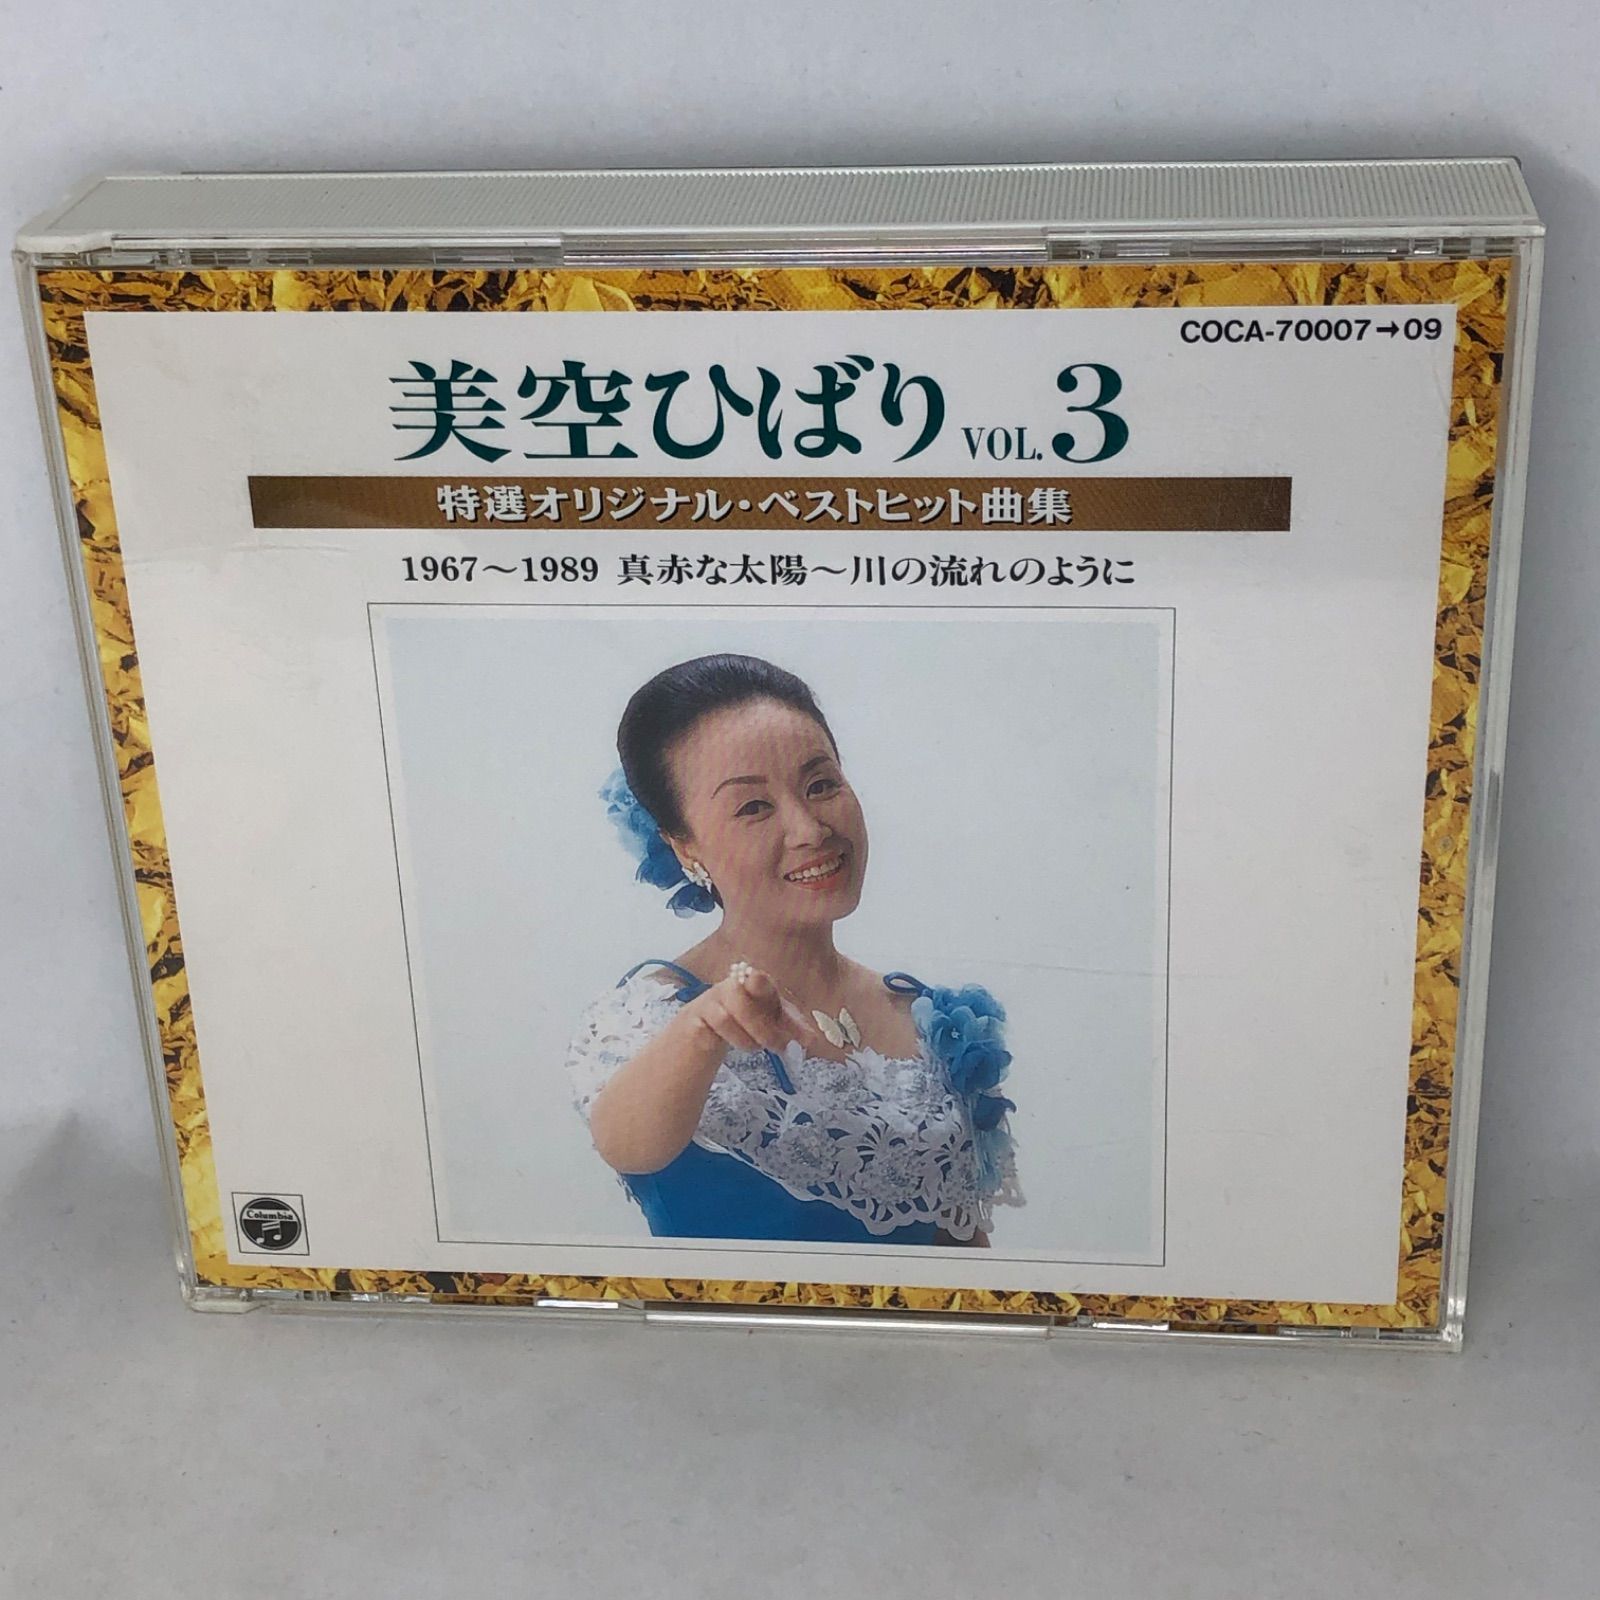 美空ひばり 『特選オリジナル・ベストヒット曲集Vol.3 』 全50曲 3枚組 SHOW WHAT'S メルカリ